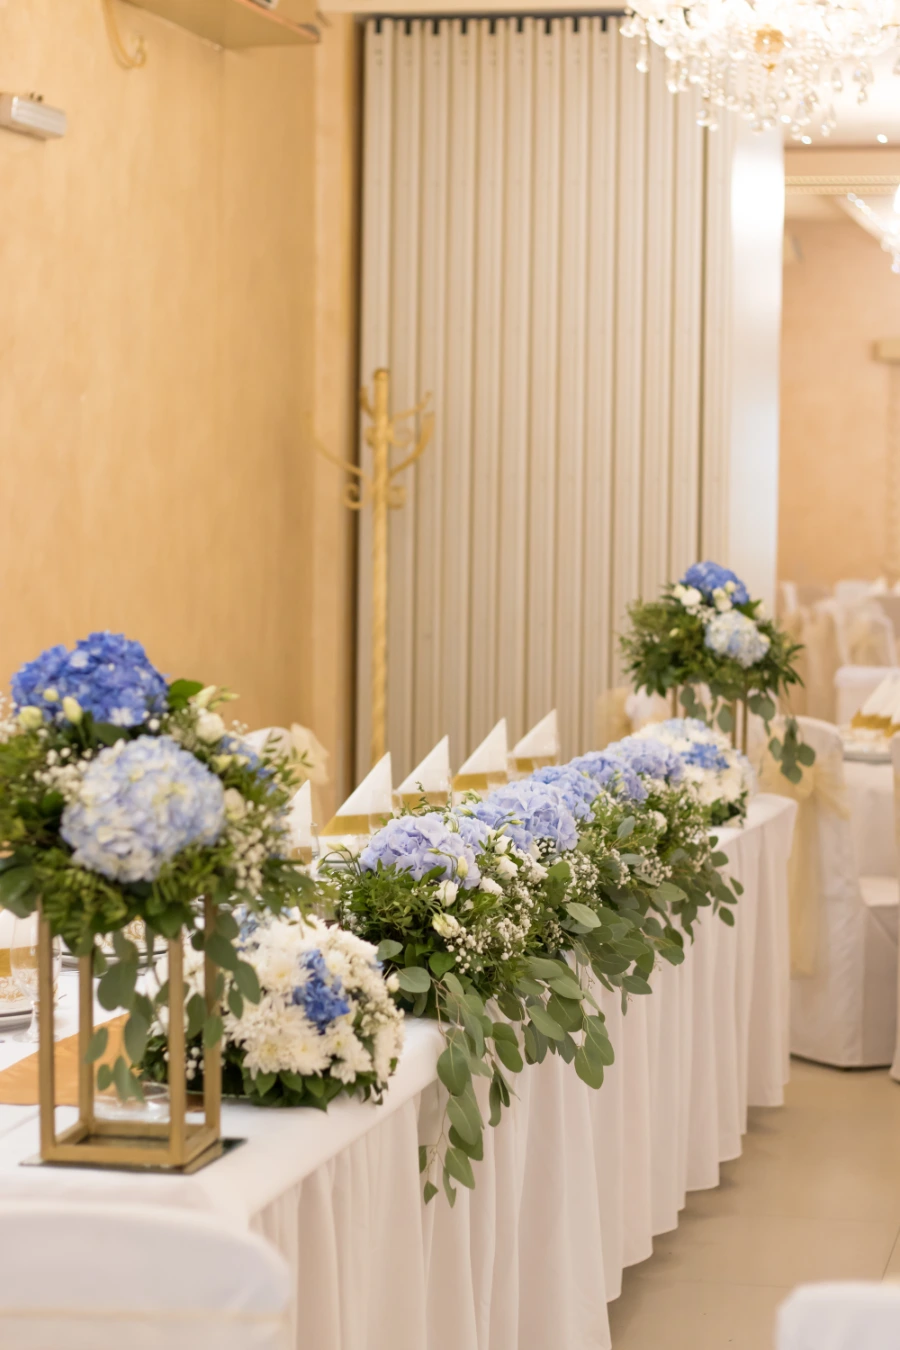 Mladenački sto sa plavim hortenzijama i belim hrizantemama